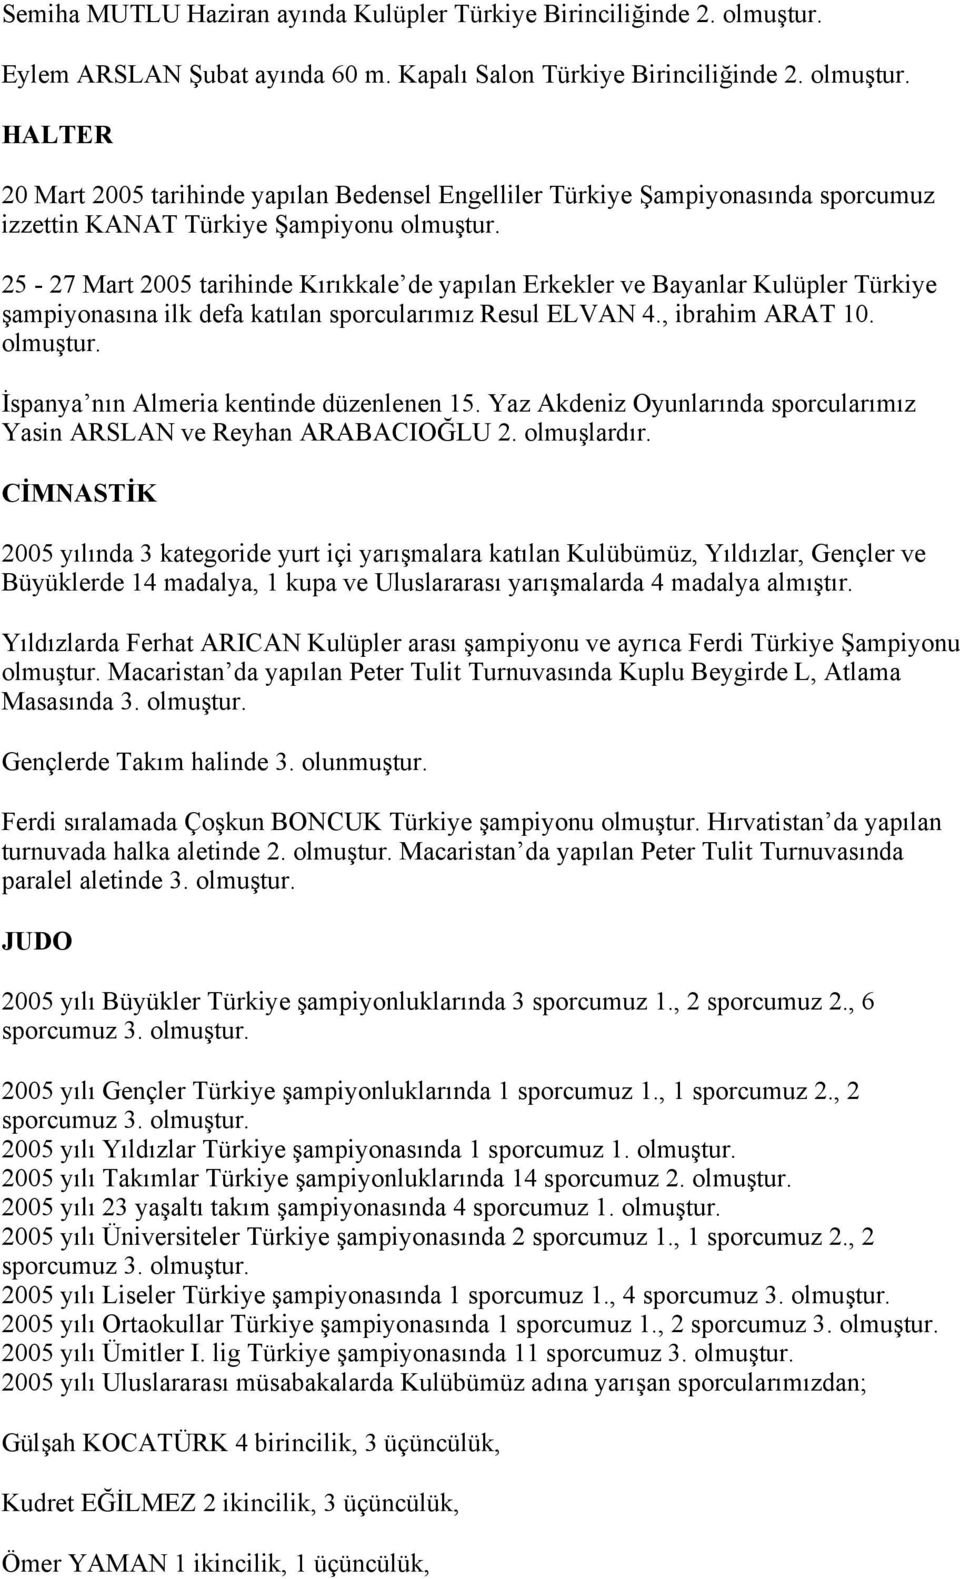 HALTER 20 Mart 2005 tarihinde yapılan Bedensel Engelliler Türkiye Şampiyonasında sporcumuz izzettin KANAT Türkiye Şampiyonu olmuştur.